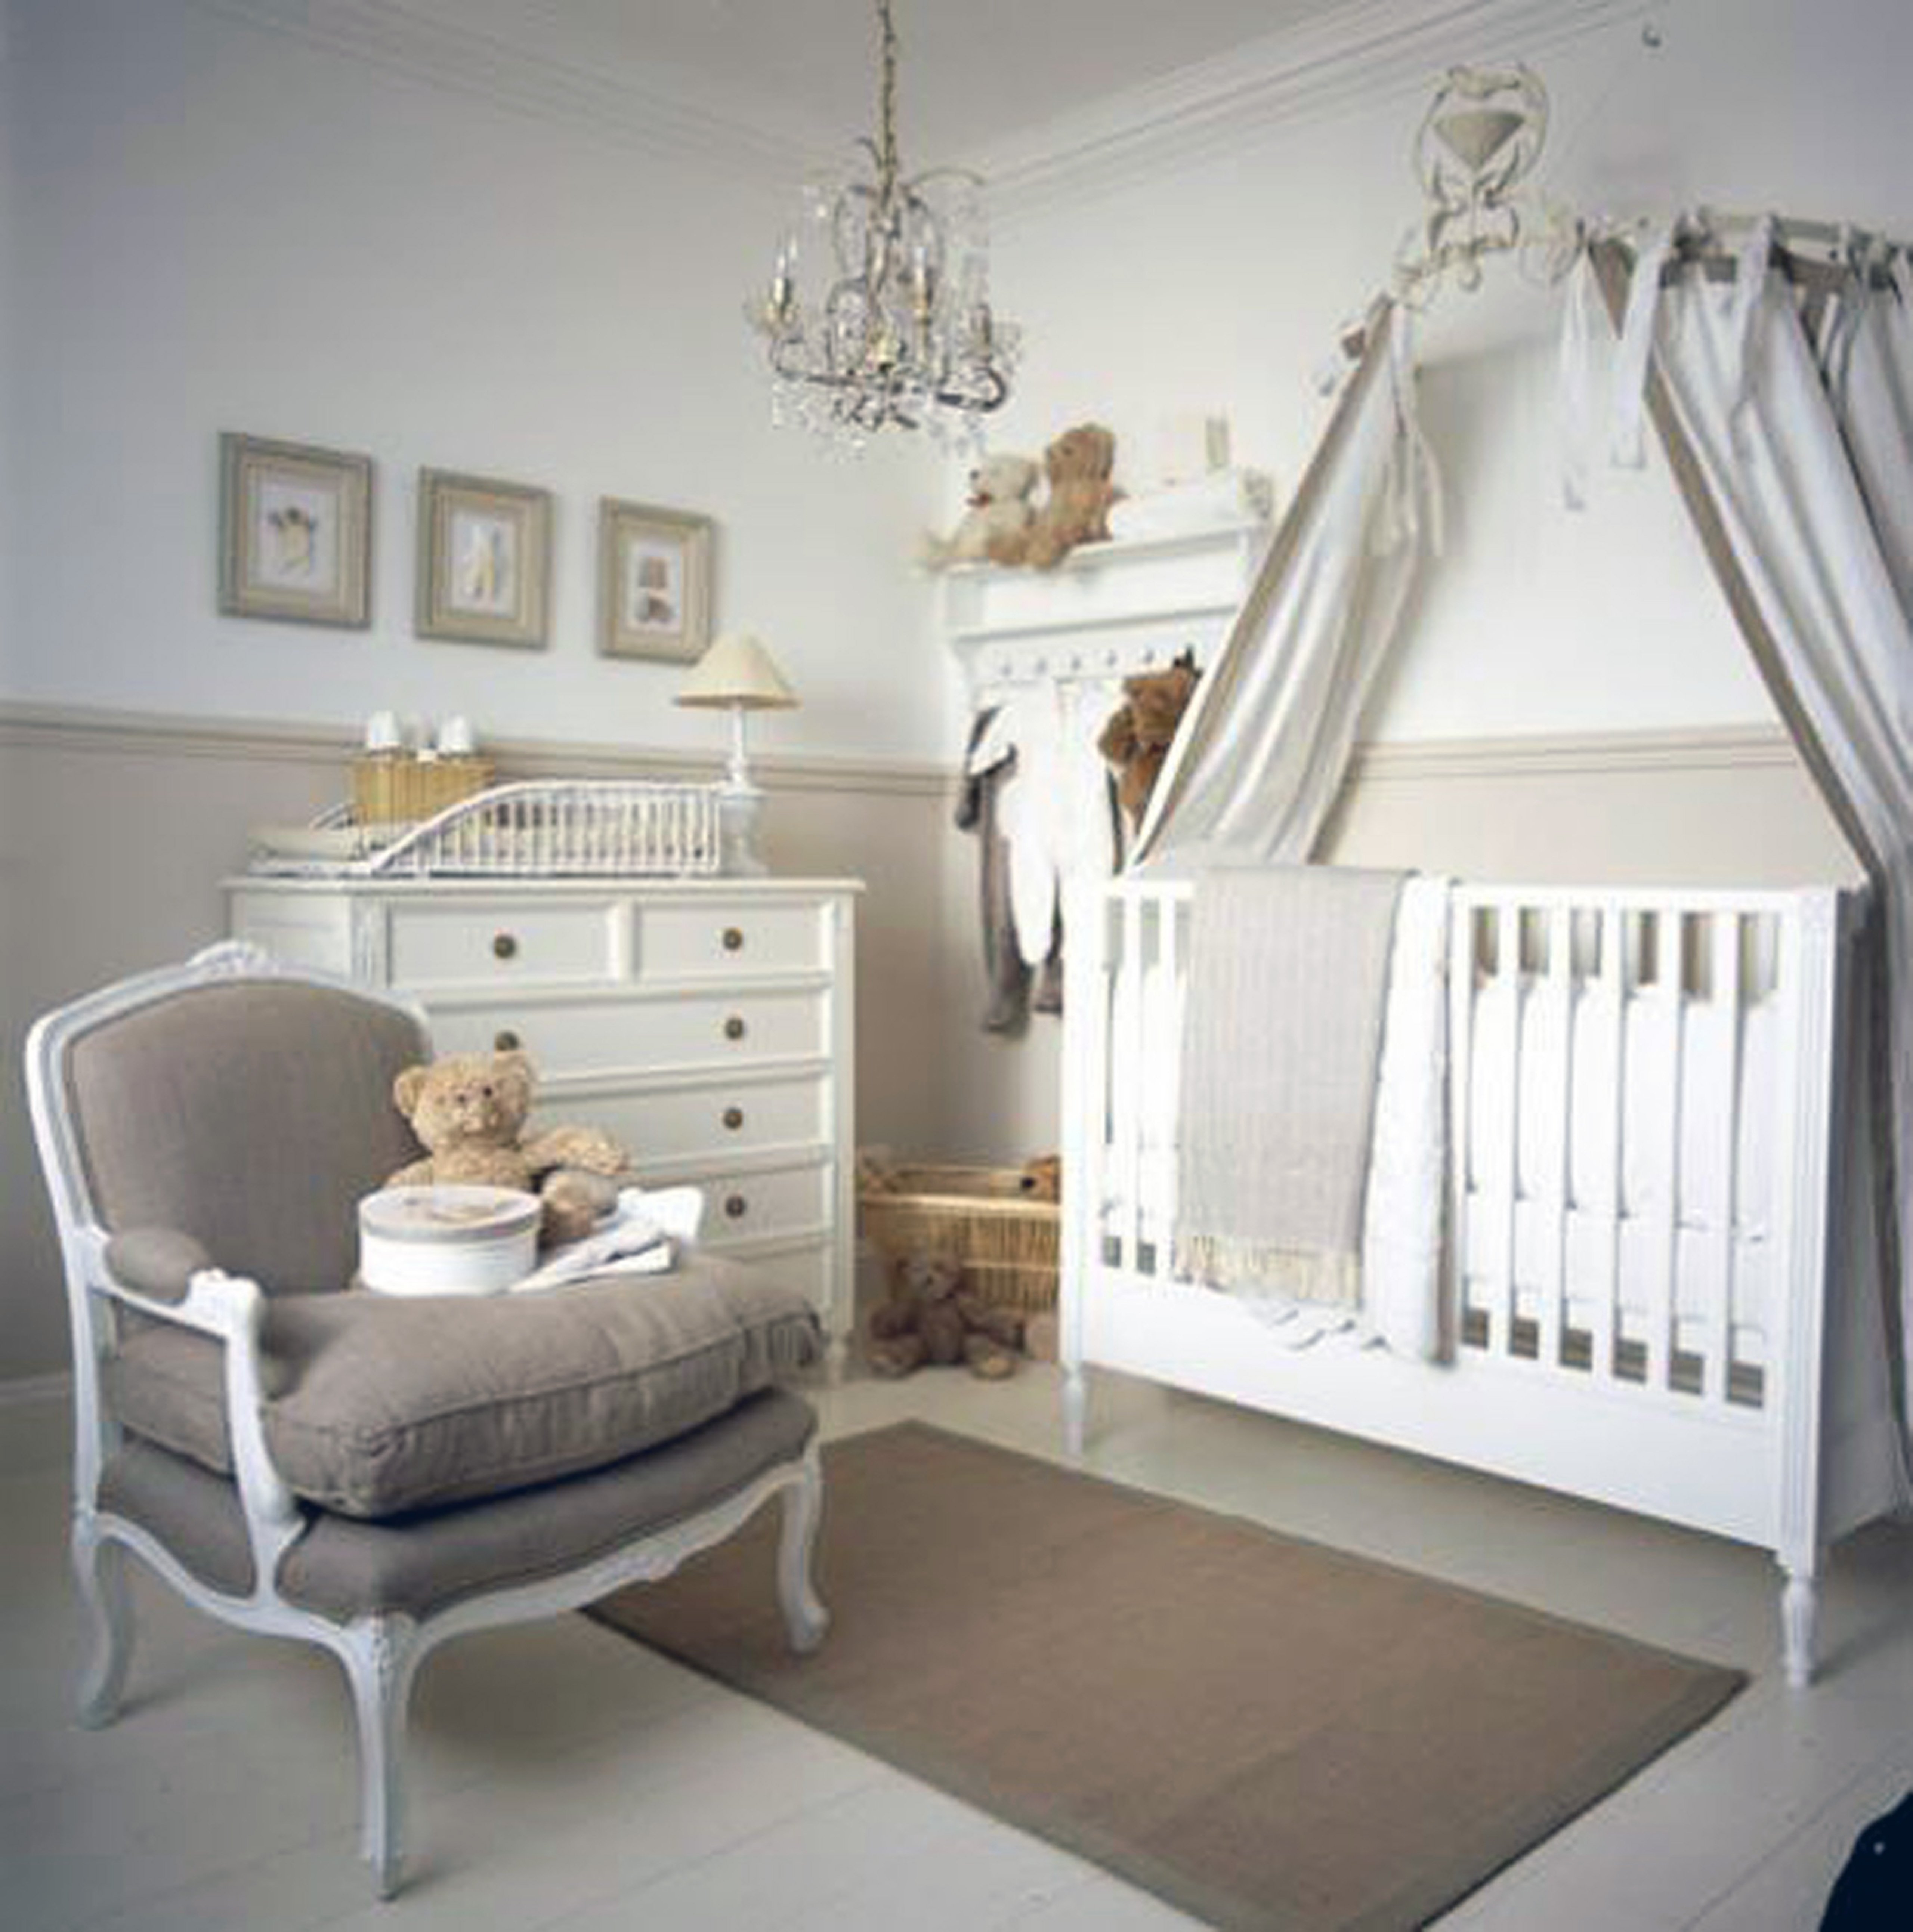 Baby bedroom. Комната для новорожденного. Уютная детская для младенца. Интерьер детской комнаты для малыша. Интерьер комнаты для новорожденного.